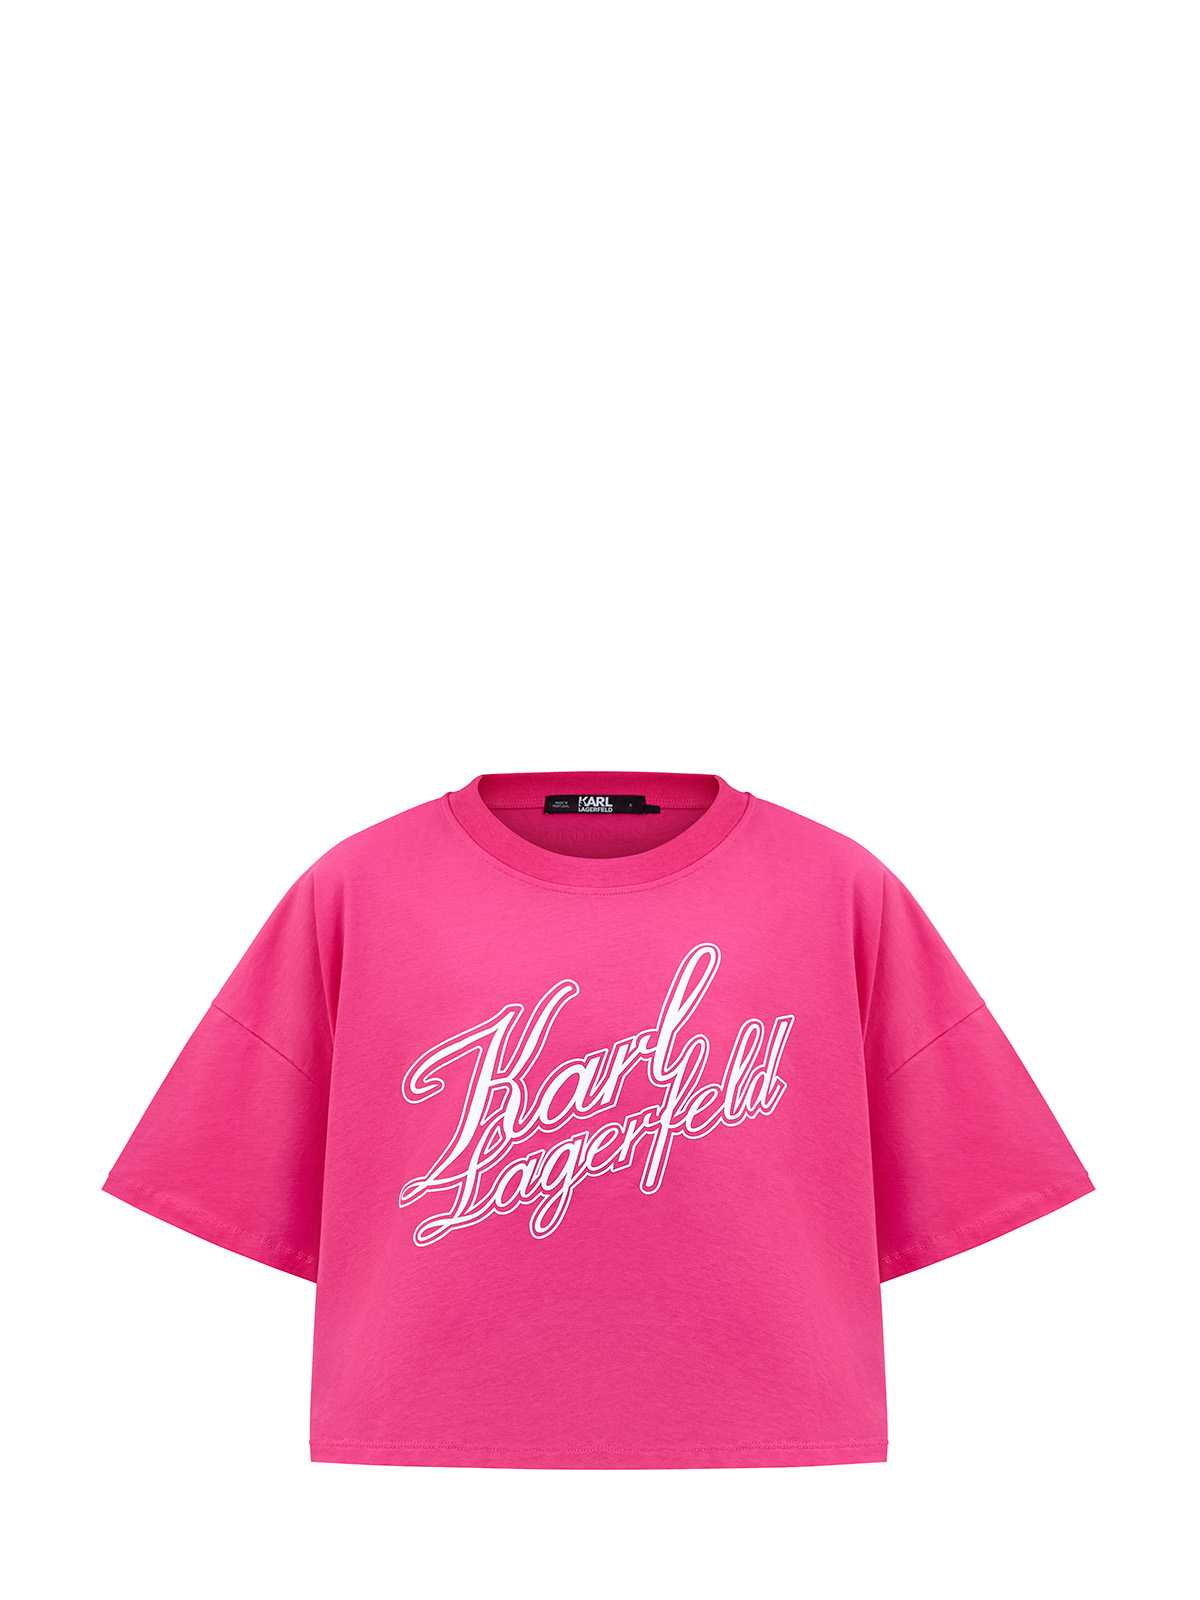 Укороченная футболка из органического хлопка джерси с принтом KARL LAGERFELD, цвет розовый, размер XS;S;M - фото 1